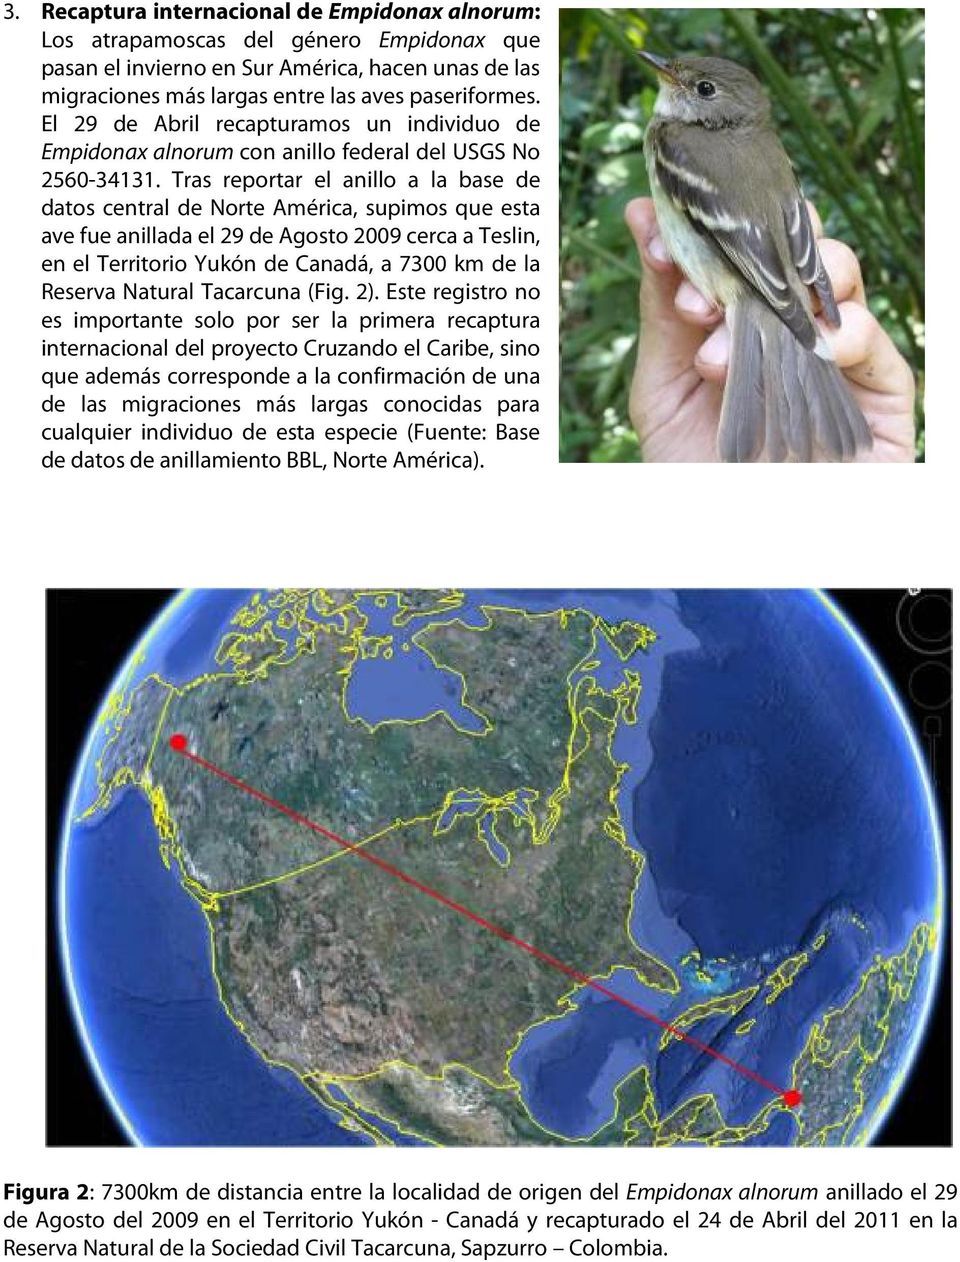 Tras reportar el anillo a la base de datos central de Norte América, supimos que esta ave fue anillada el 29 de Agosto 2009 cerca a Teslin, en el Territorio Yukón de Canadá, a 7300 km de la Reserva